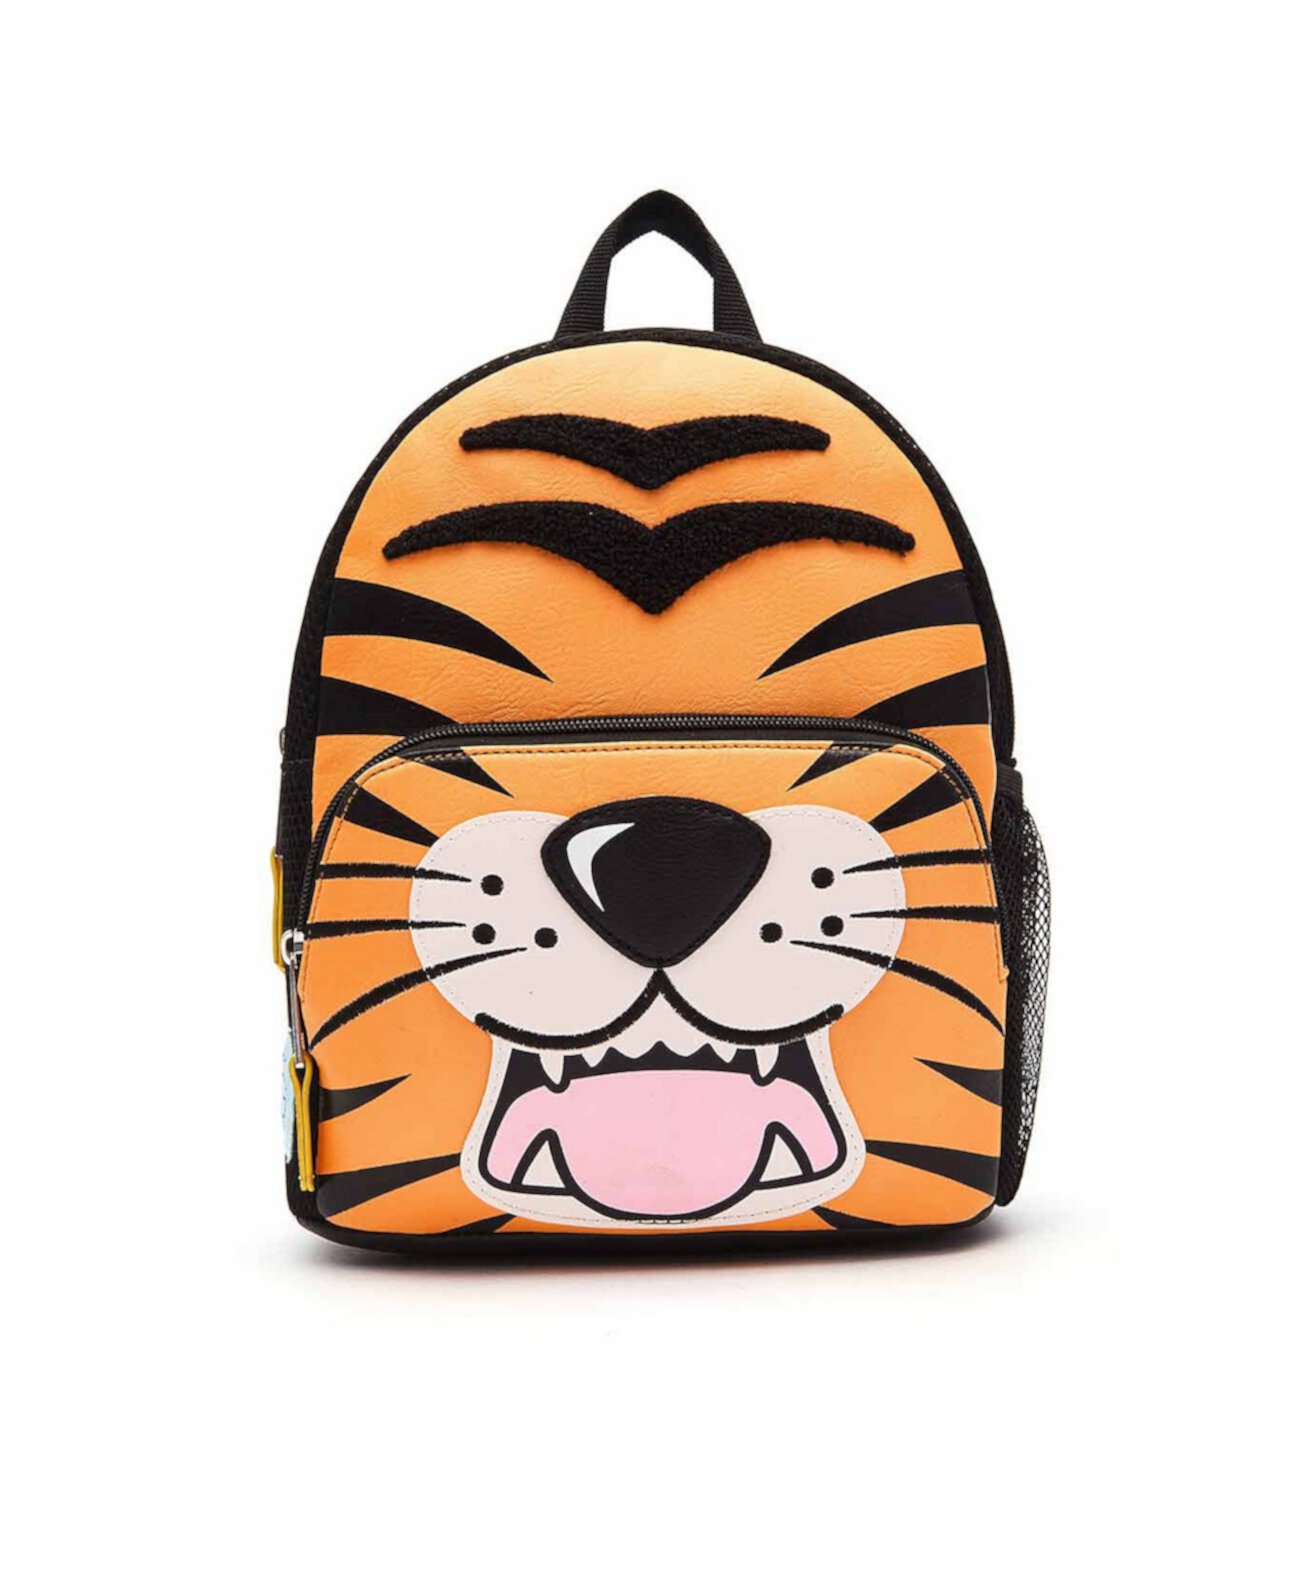 Мини-рюкзак в полоску с тигром OMG! Accessories